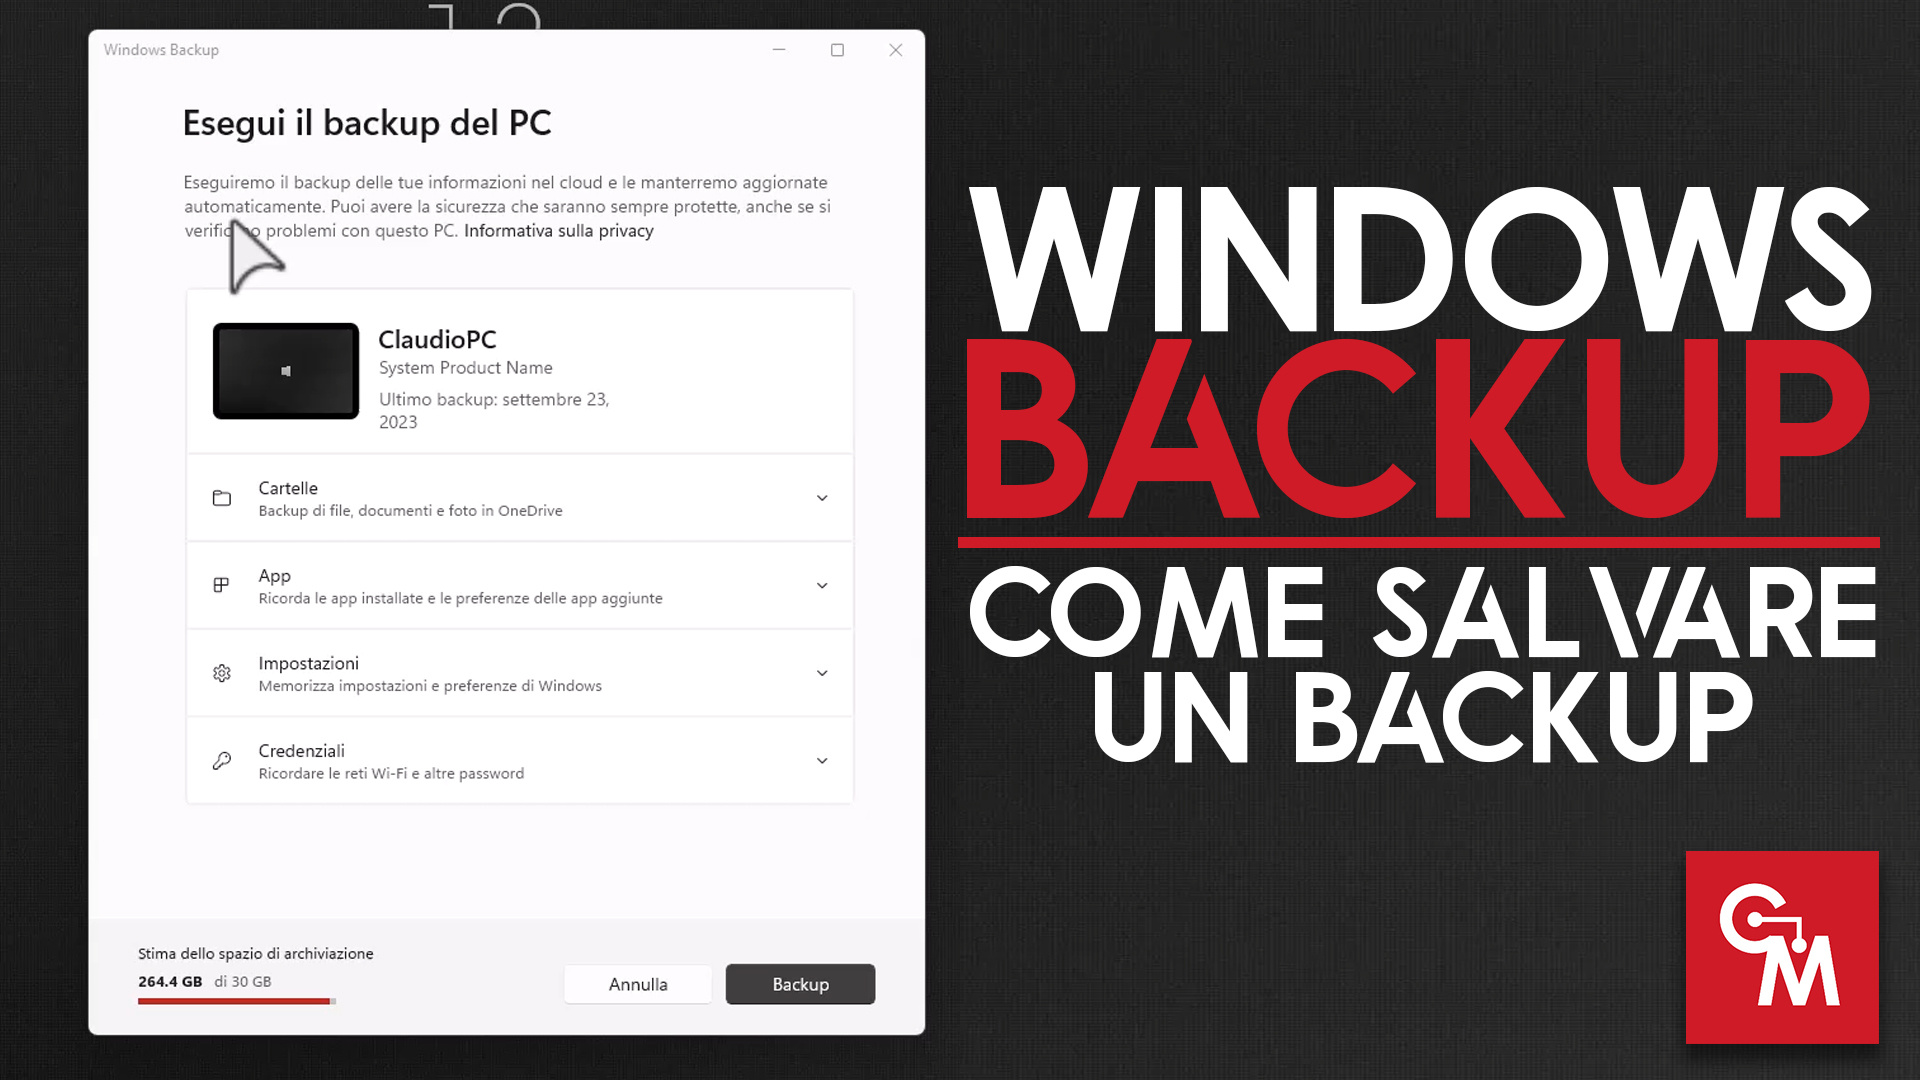 Come salvare un backup di Windows con Windows Backup